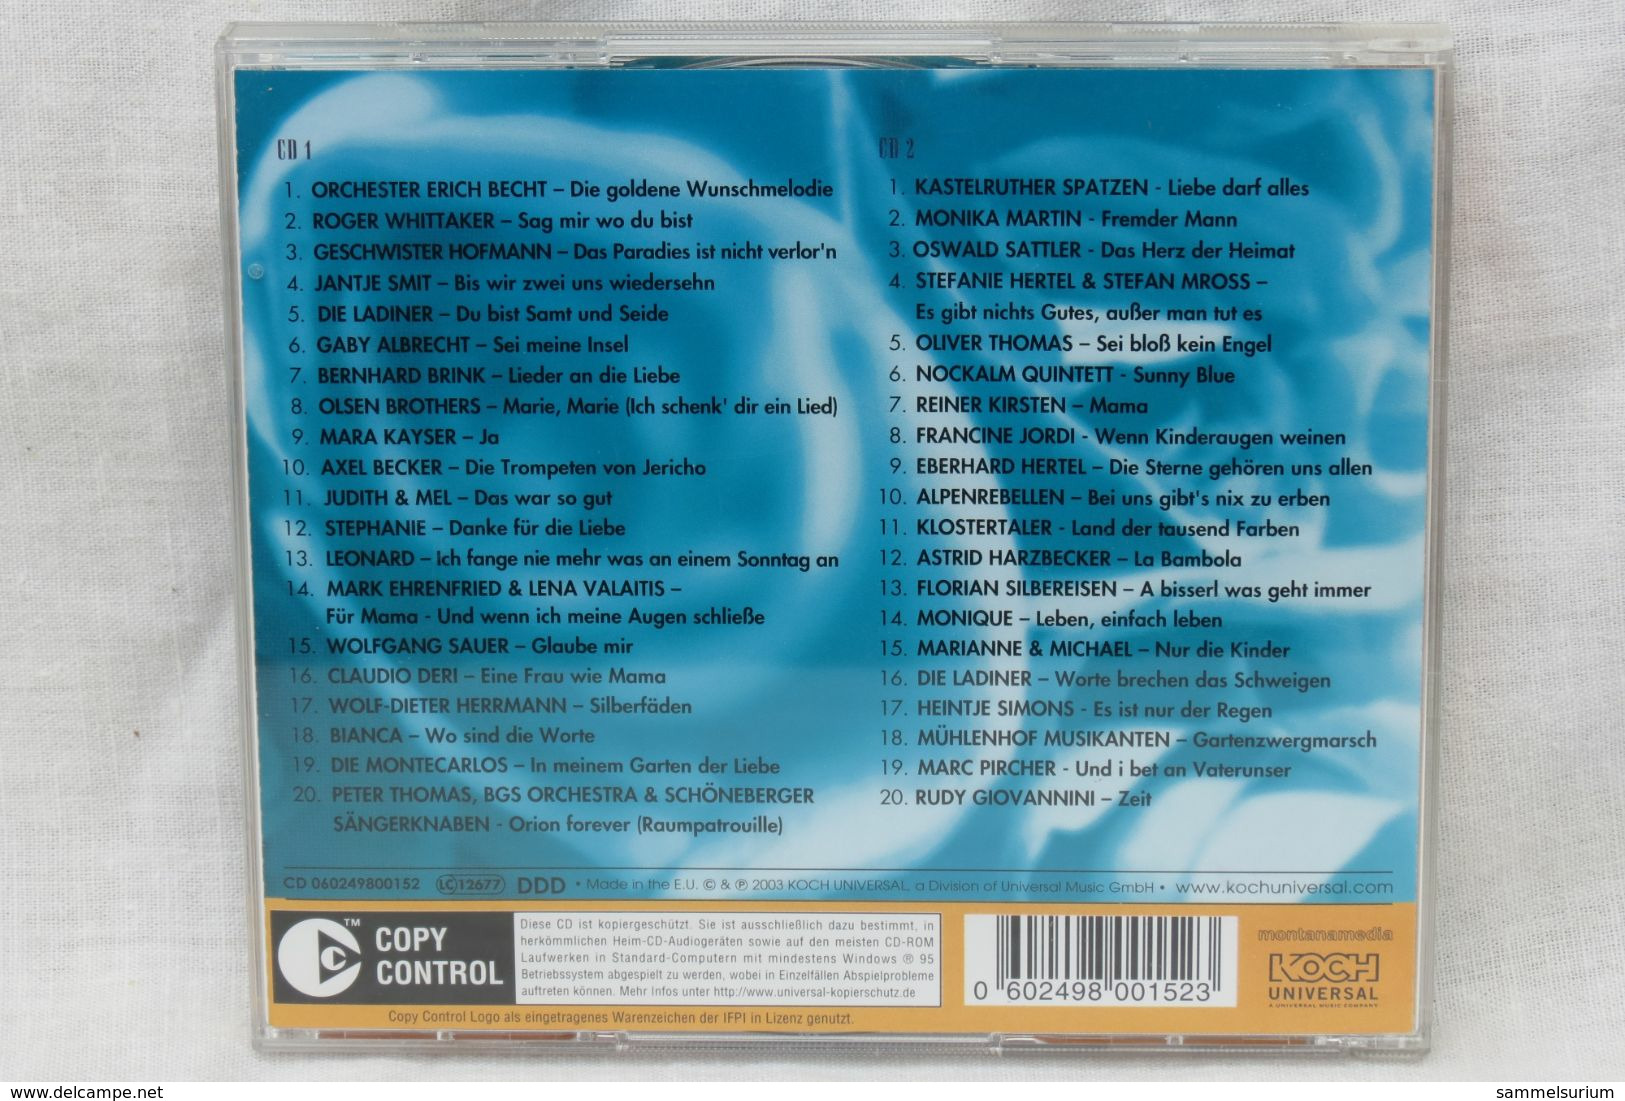 2 CDs "Carolin Reiber" Präsentiert Das Superwunschkonzert - Sonstige - Deutsche Musik